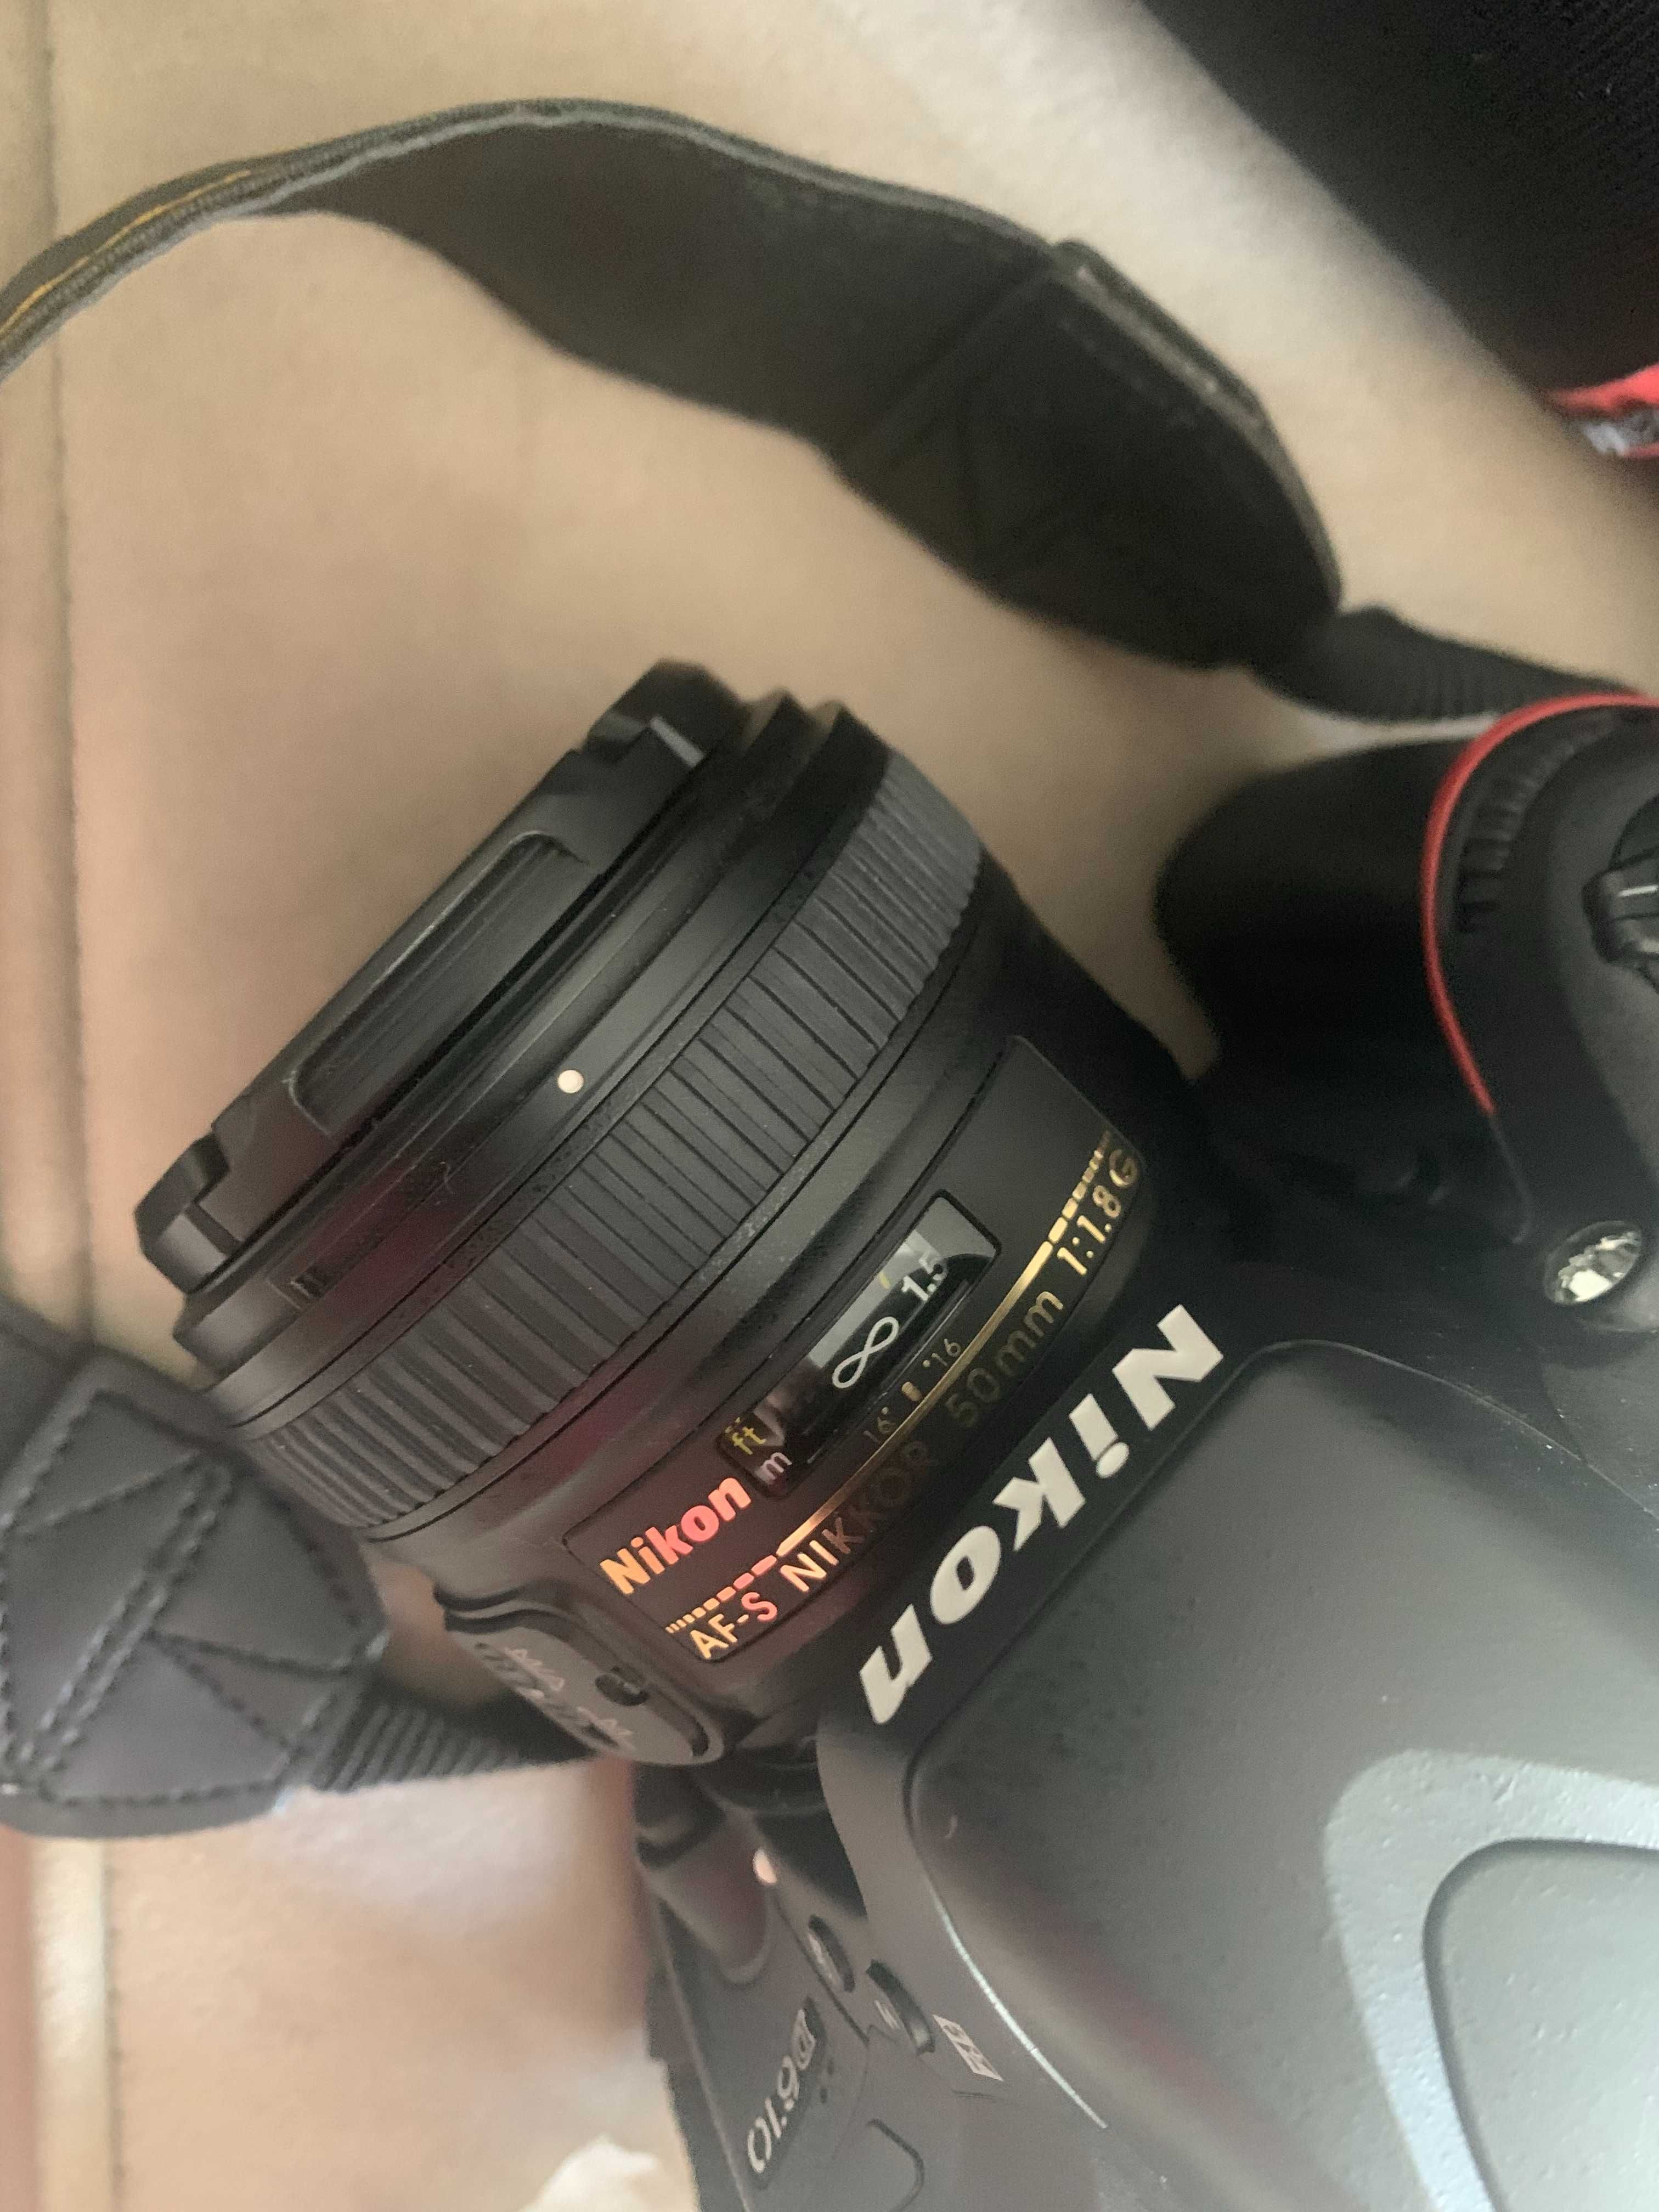 Aparat Nikon D610 + obiektyw af-s nikkor 50mm f/1.8g